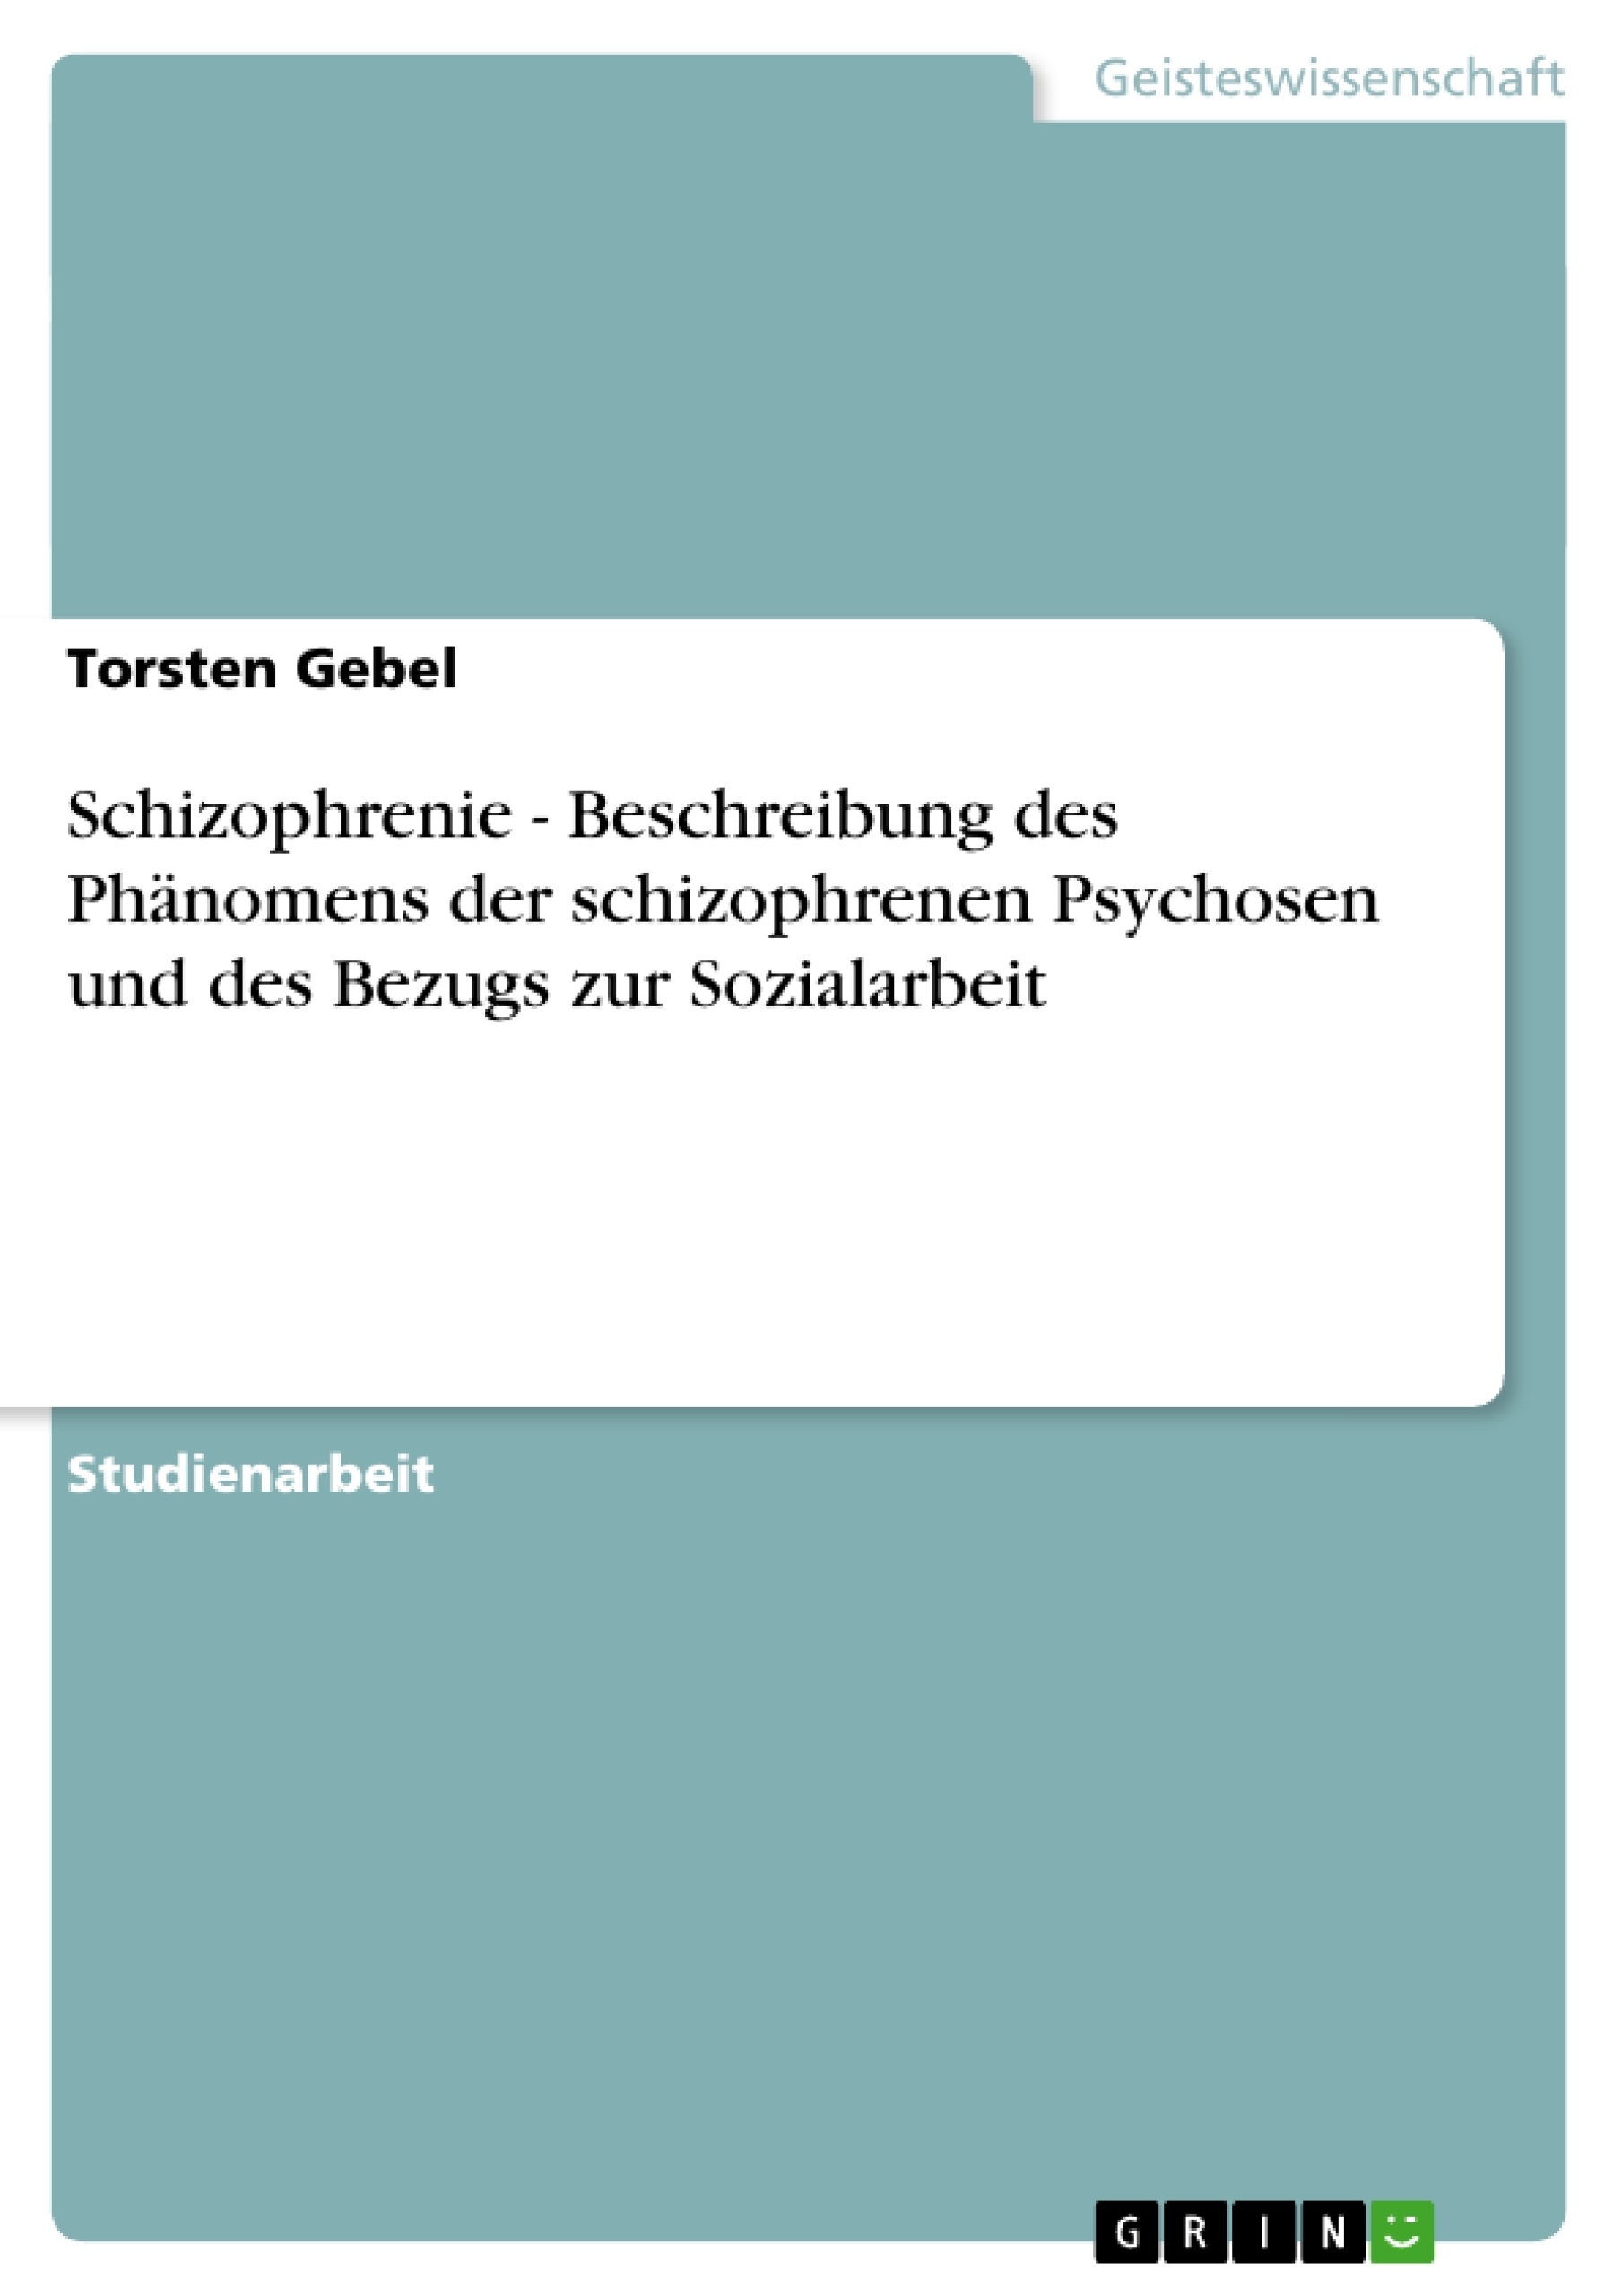 Titre: Schizophrenie - Beschreibung des Phänomens der schizophrenen Psychosen und des Bezugs zur Sozialarbeit